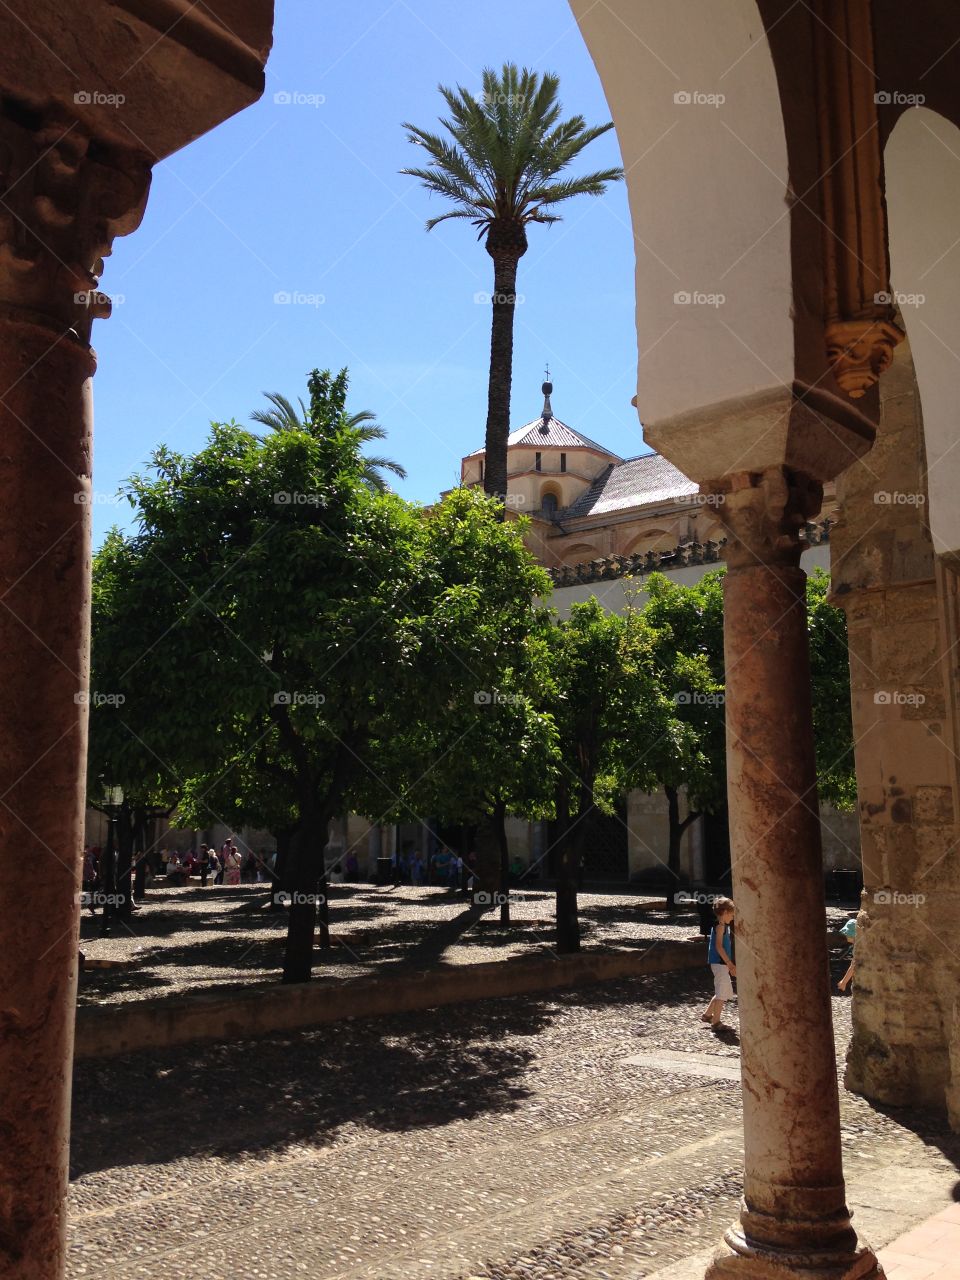 Courtyard in Córdoba. Courtyard outside the Grand Mosque in Córdoba, Spain